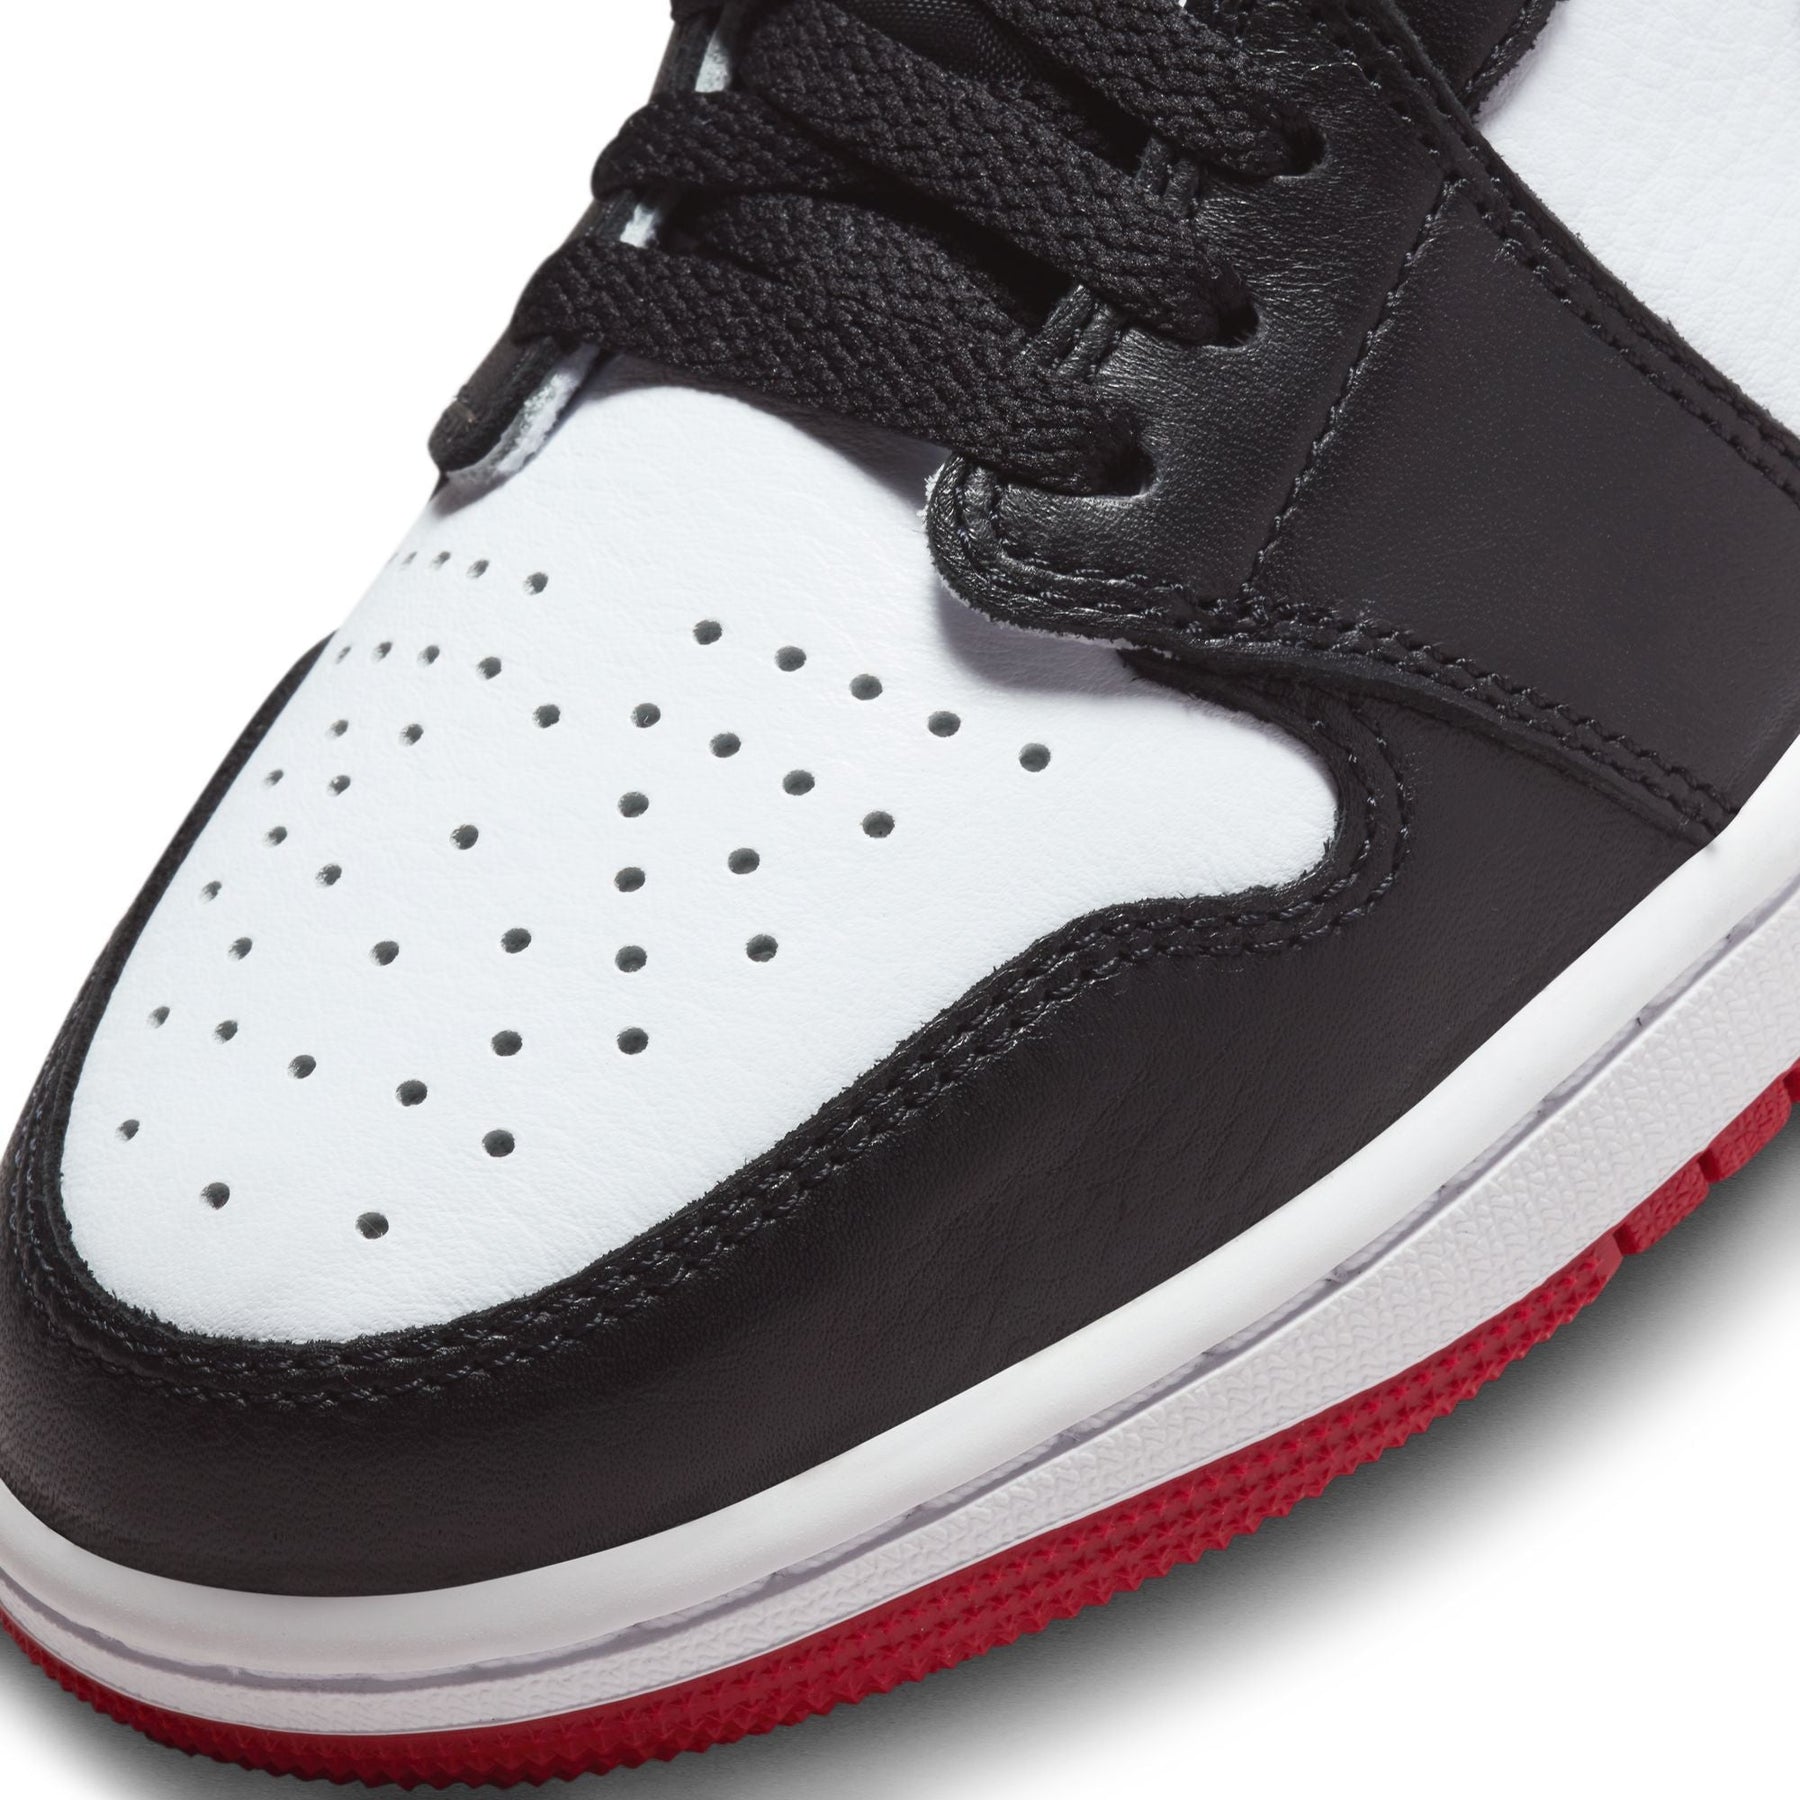 Air Jordan 1 Low OG "Black Toe" - Men